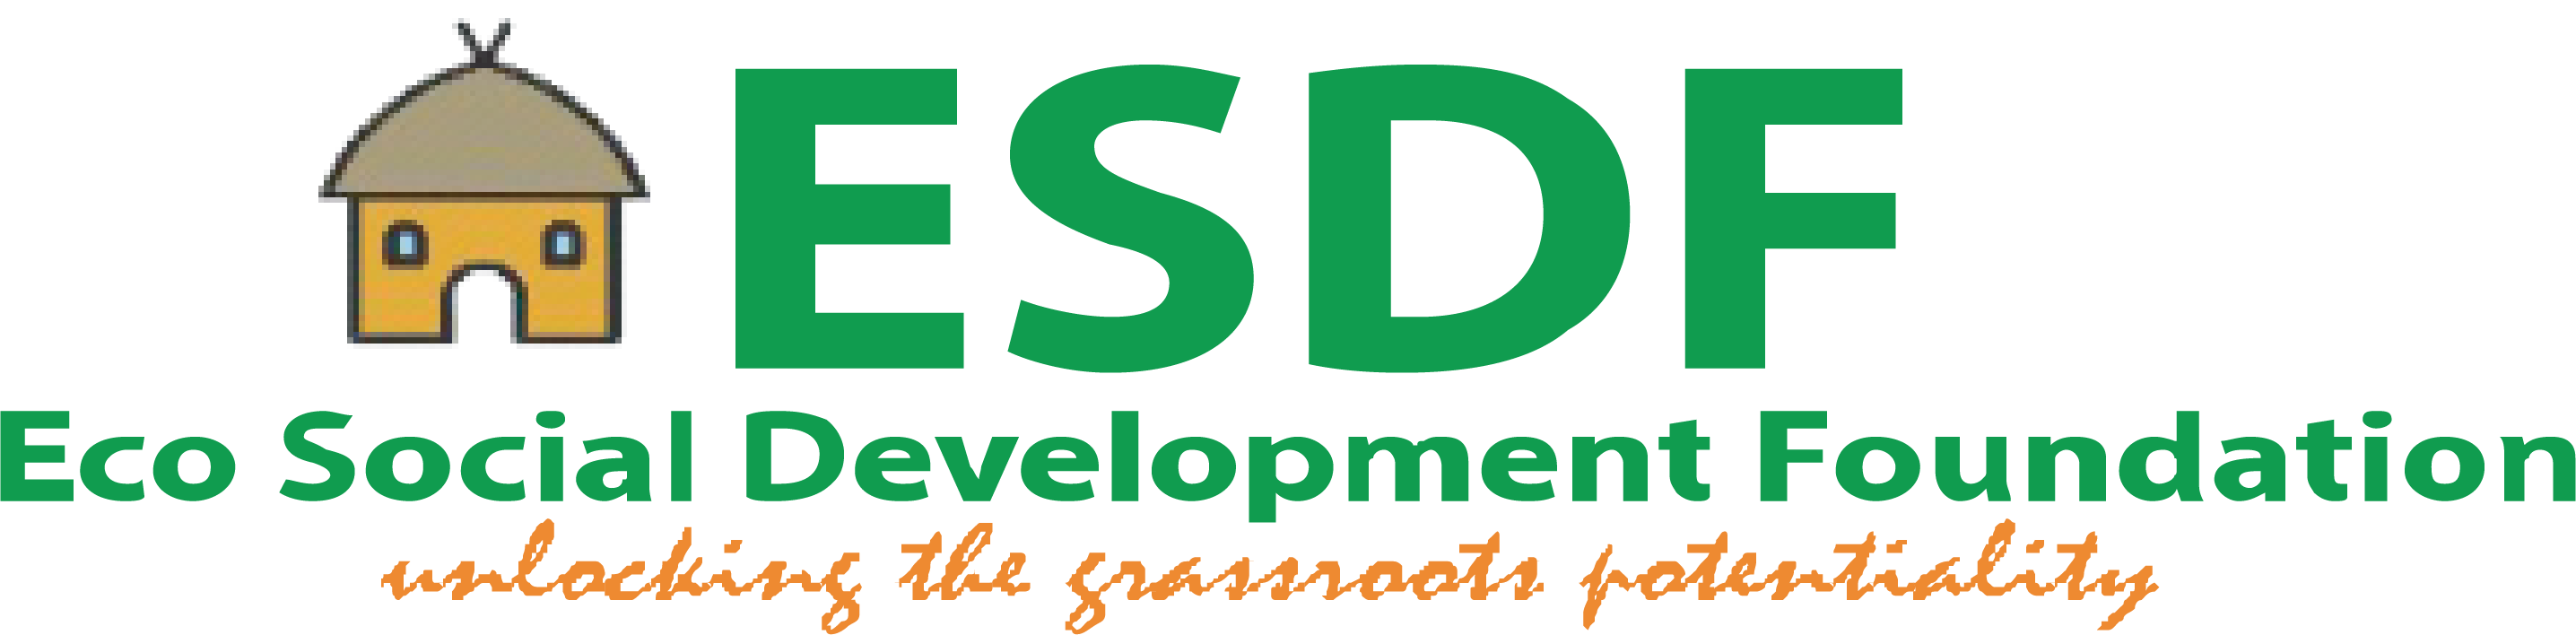 Eco-Social Development Foundation